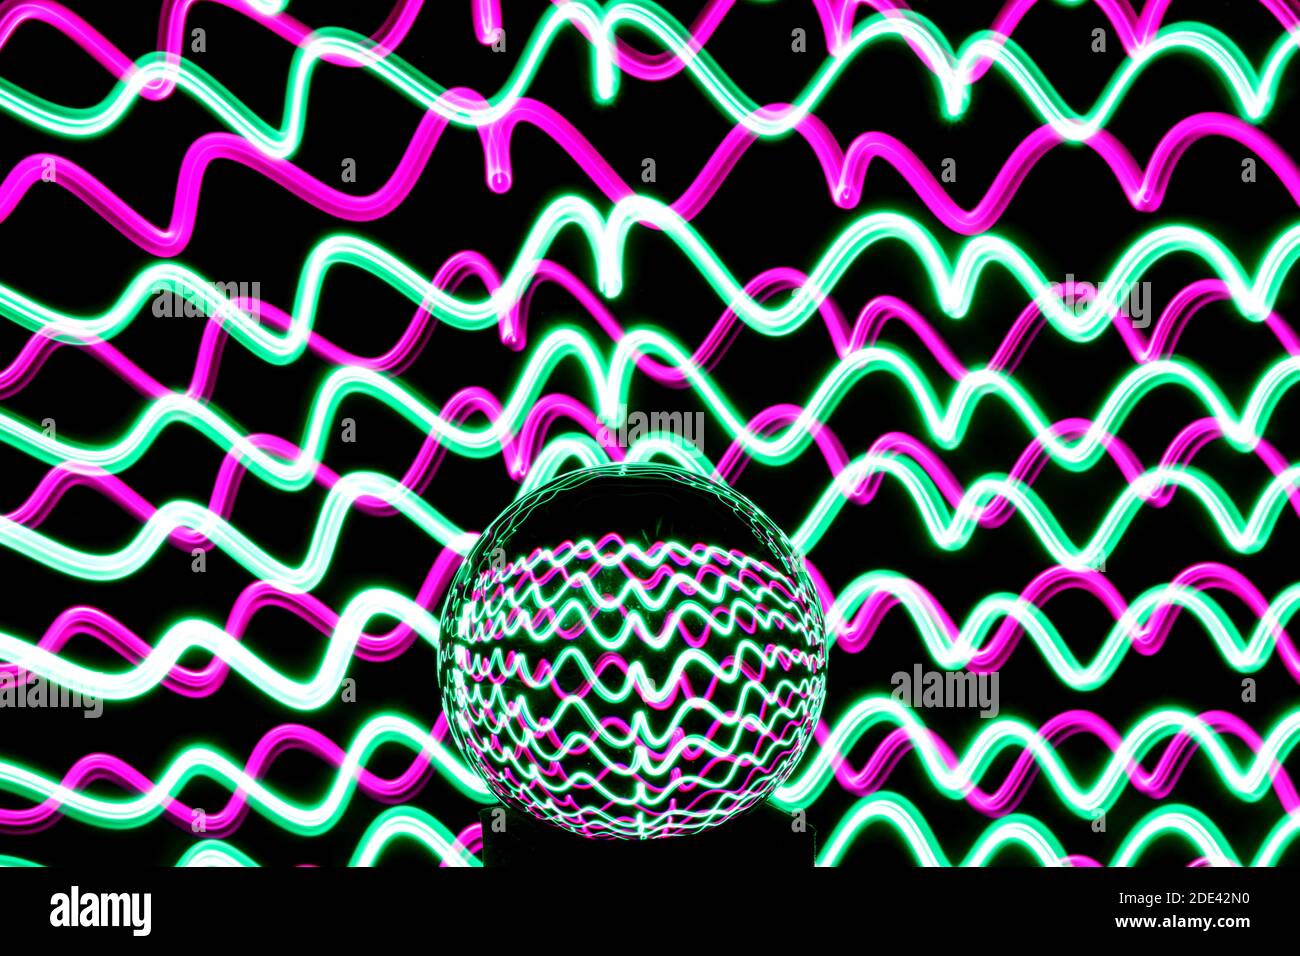 Fotografia a lunga esposizione di neon multicolore in un modello astratto di turbolenza con sfera di vetro riflettente. Fotografia di pittura leggera. Foto Stock